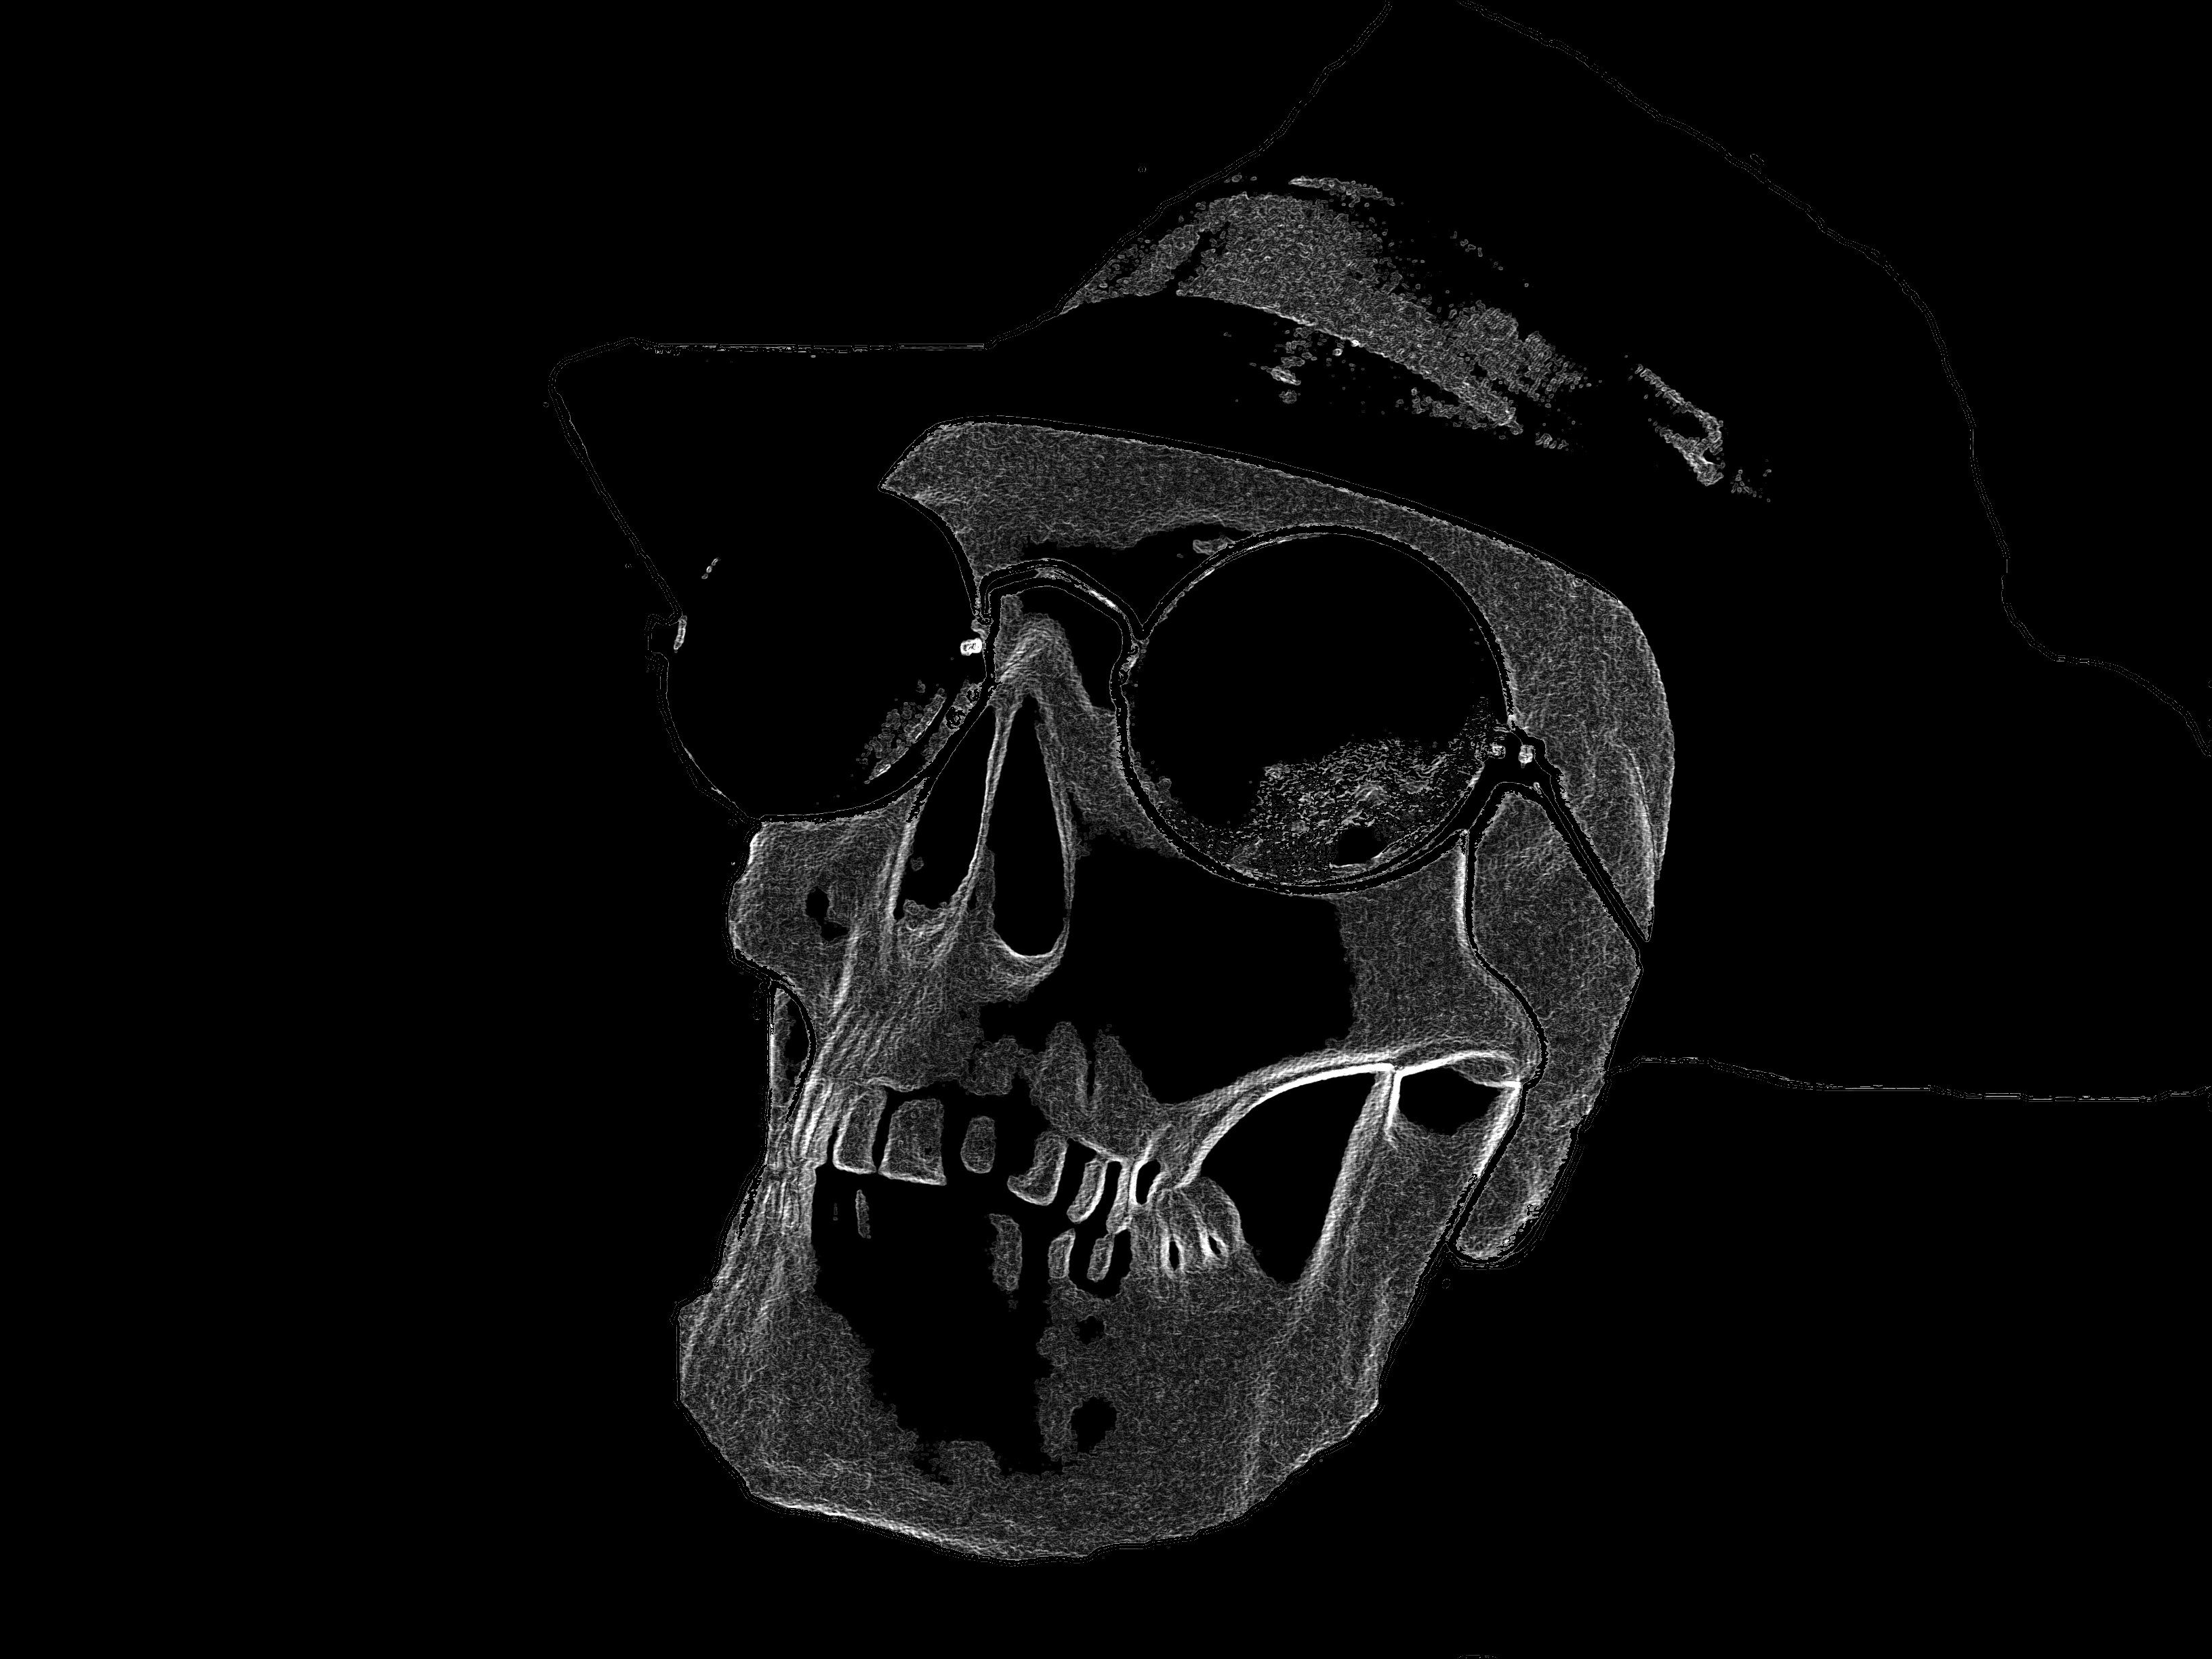 Black And White Desktop Wallpaper Skull Uploaded By Jerry